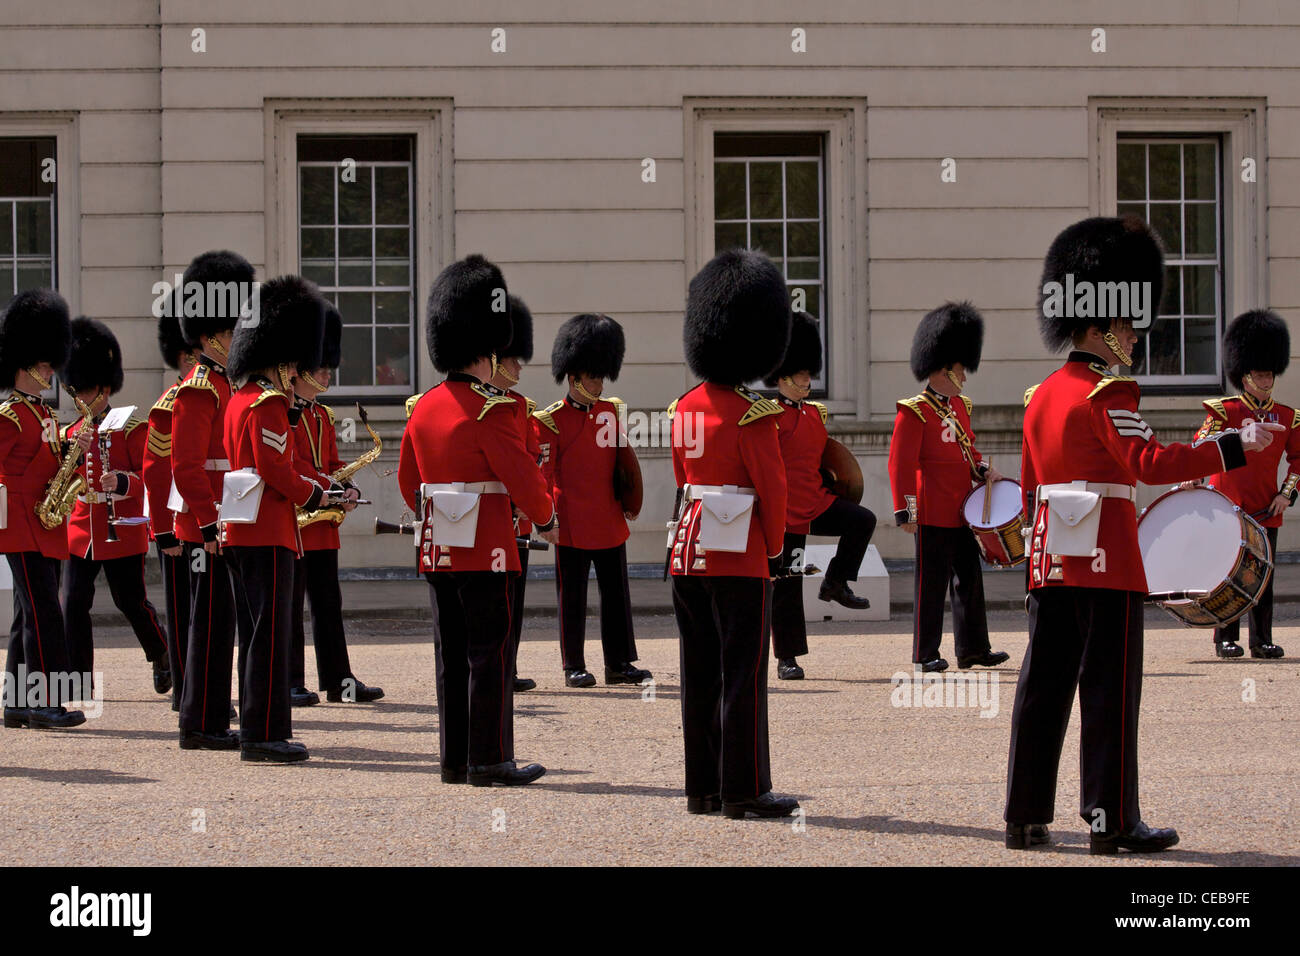 Les Grenadier Guards Marching Band exerçant devant la "relève de la garde" à l'extérieur de la Caserne Wellington Banque D'Images